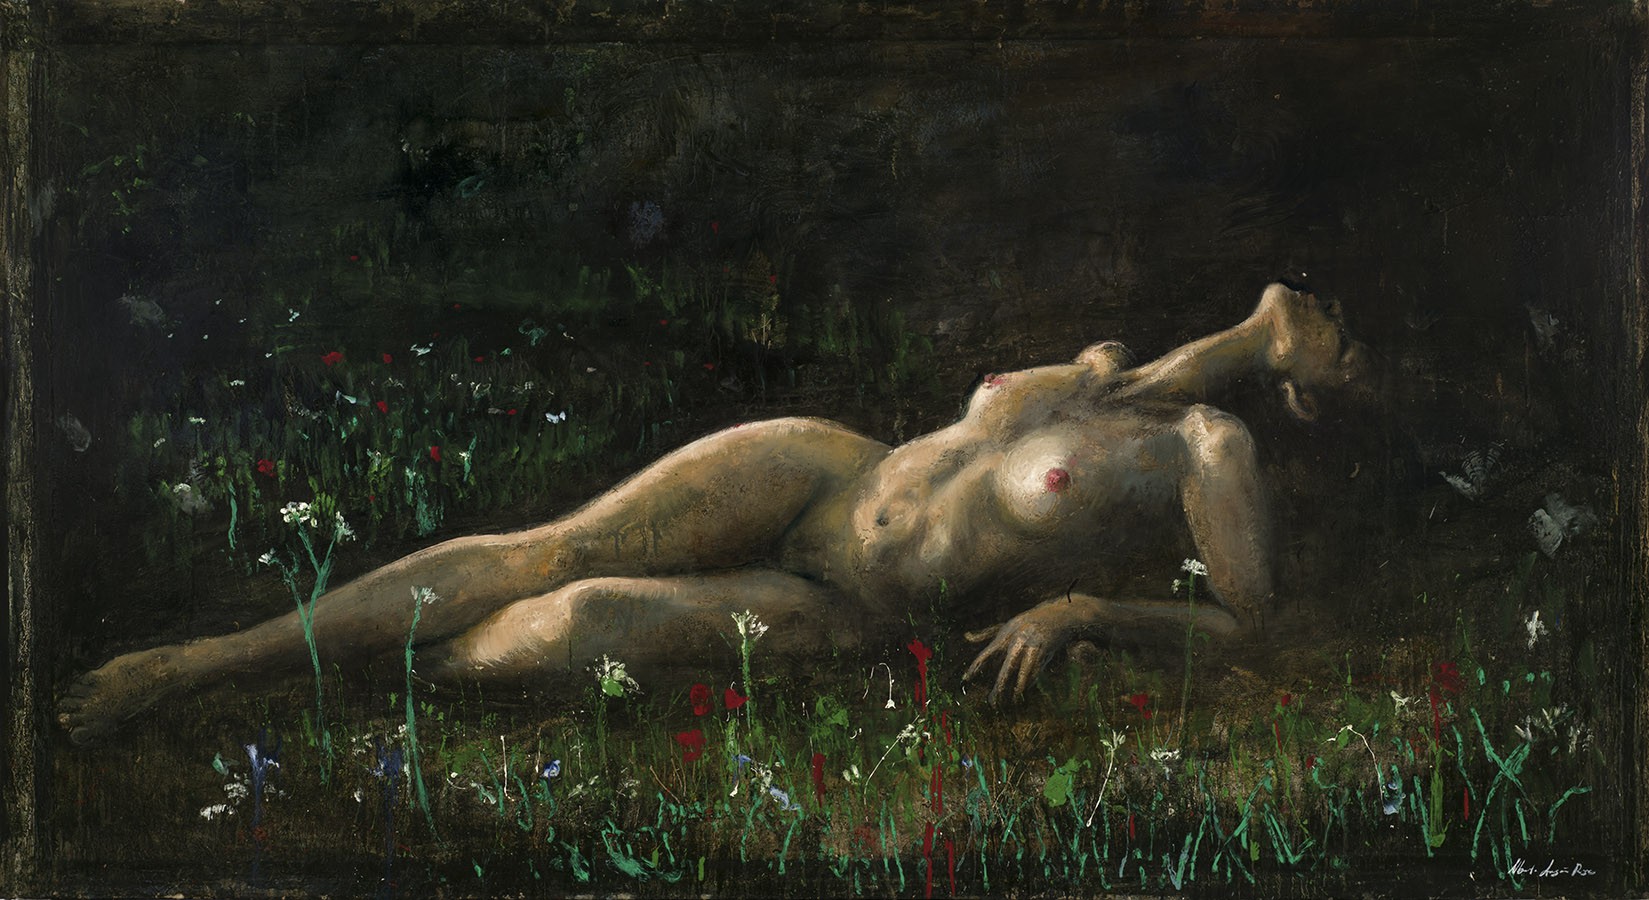 6 La giganta, 2007, óleo sobre tela 145 x 270 cm